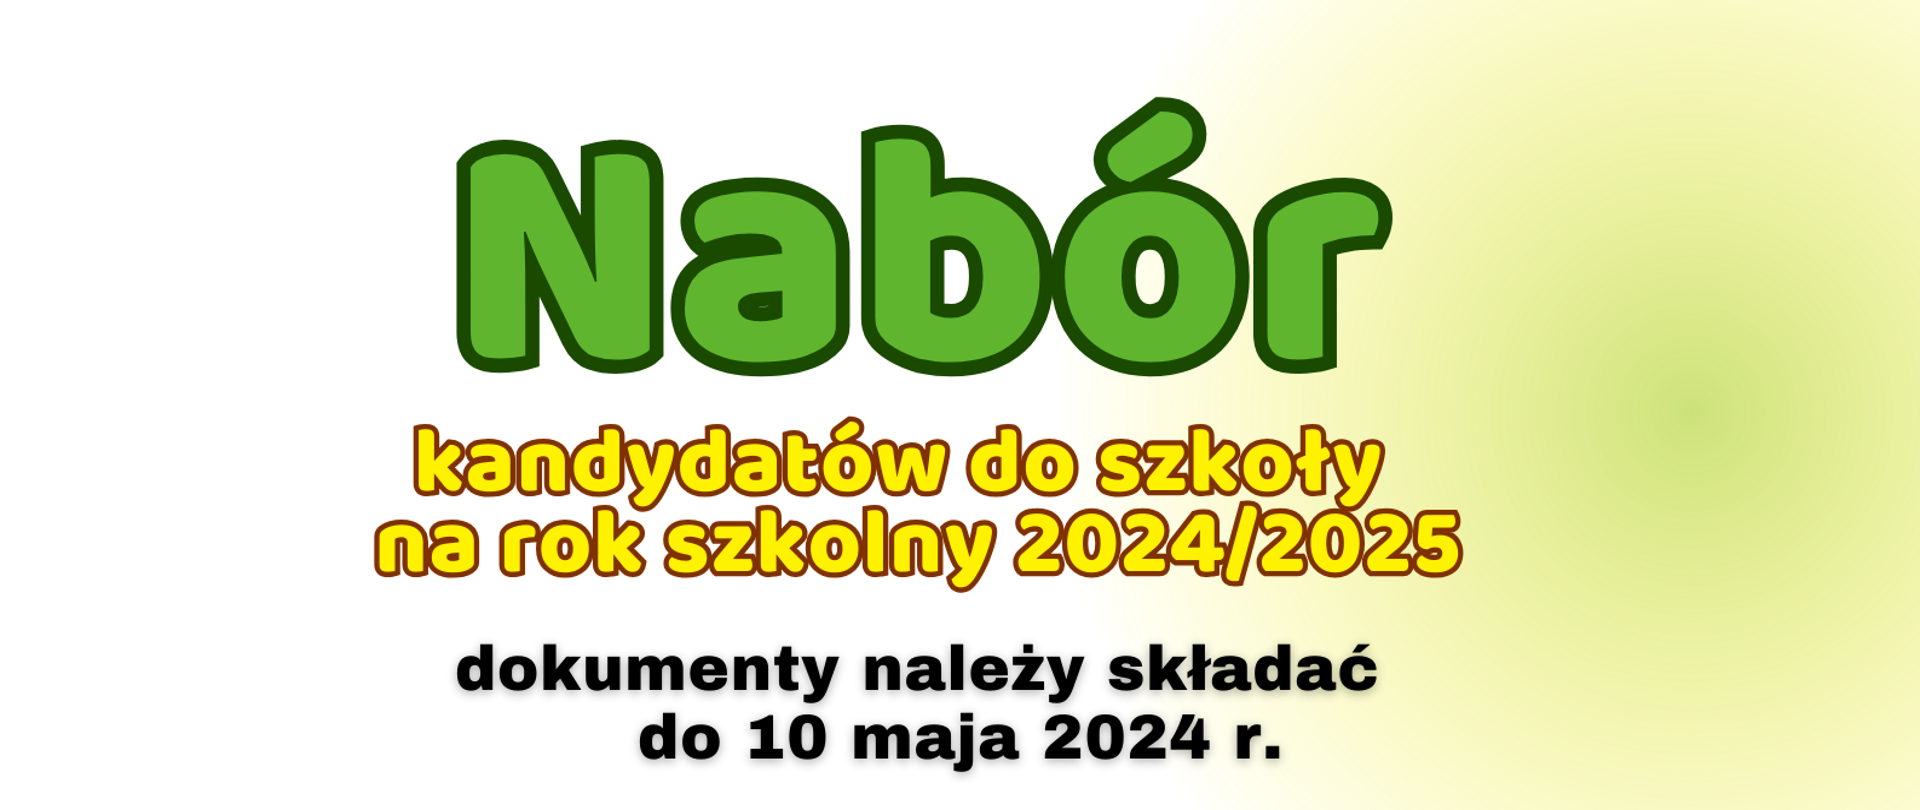 Baner z napisem: nabór kandydatów do szkoły na rok szkolny 2024/2025 dokumenty należny składać do 10 maja 2024